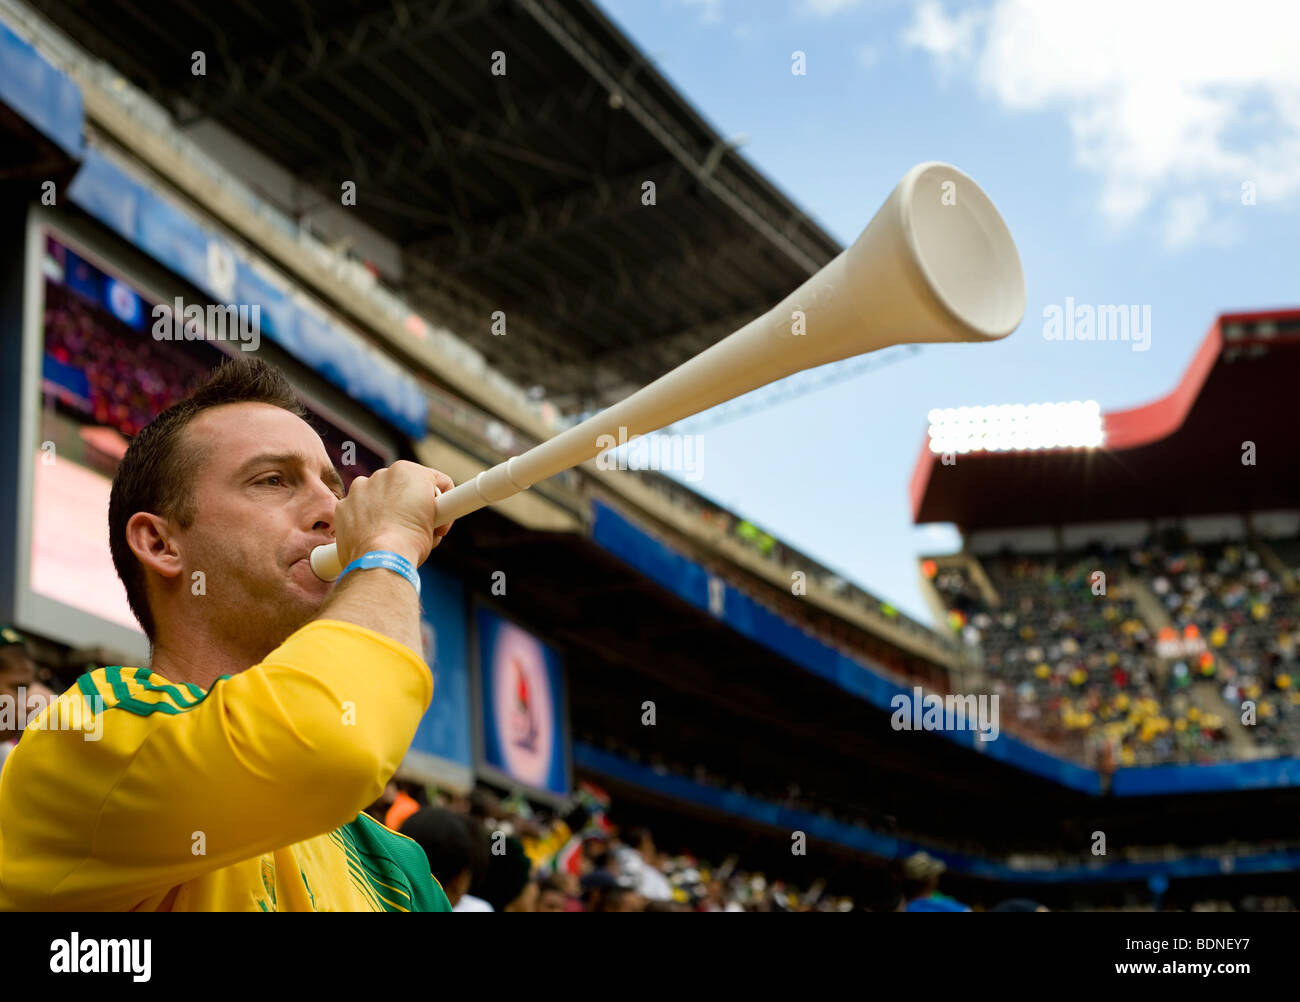 Mann bläst eine Vuvuzela in einem Fußballstadion, Johannesburg, Südafrika Stockfoto